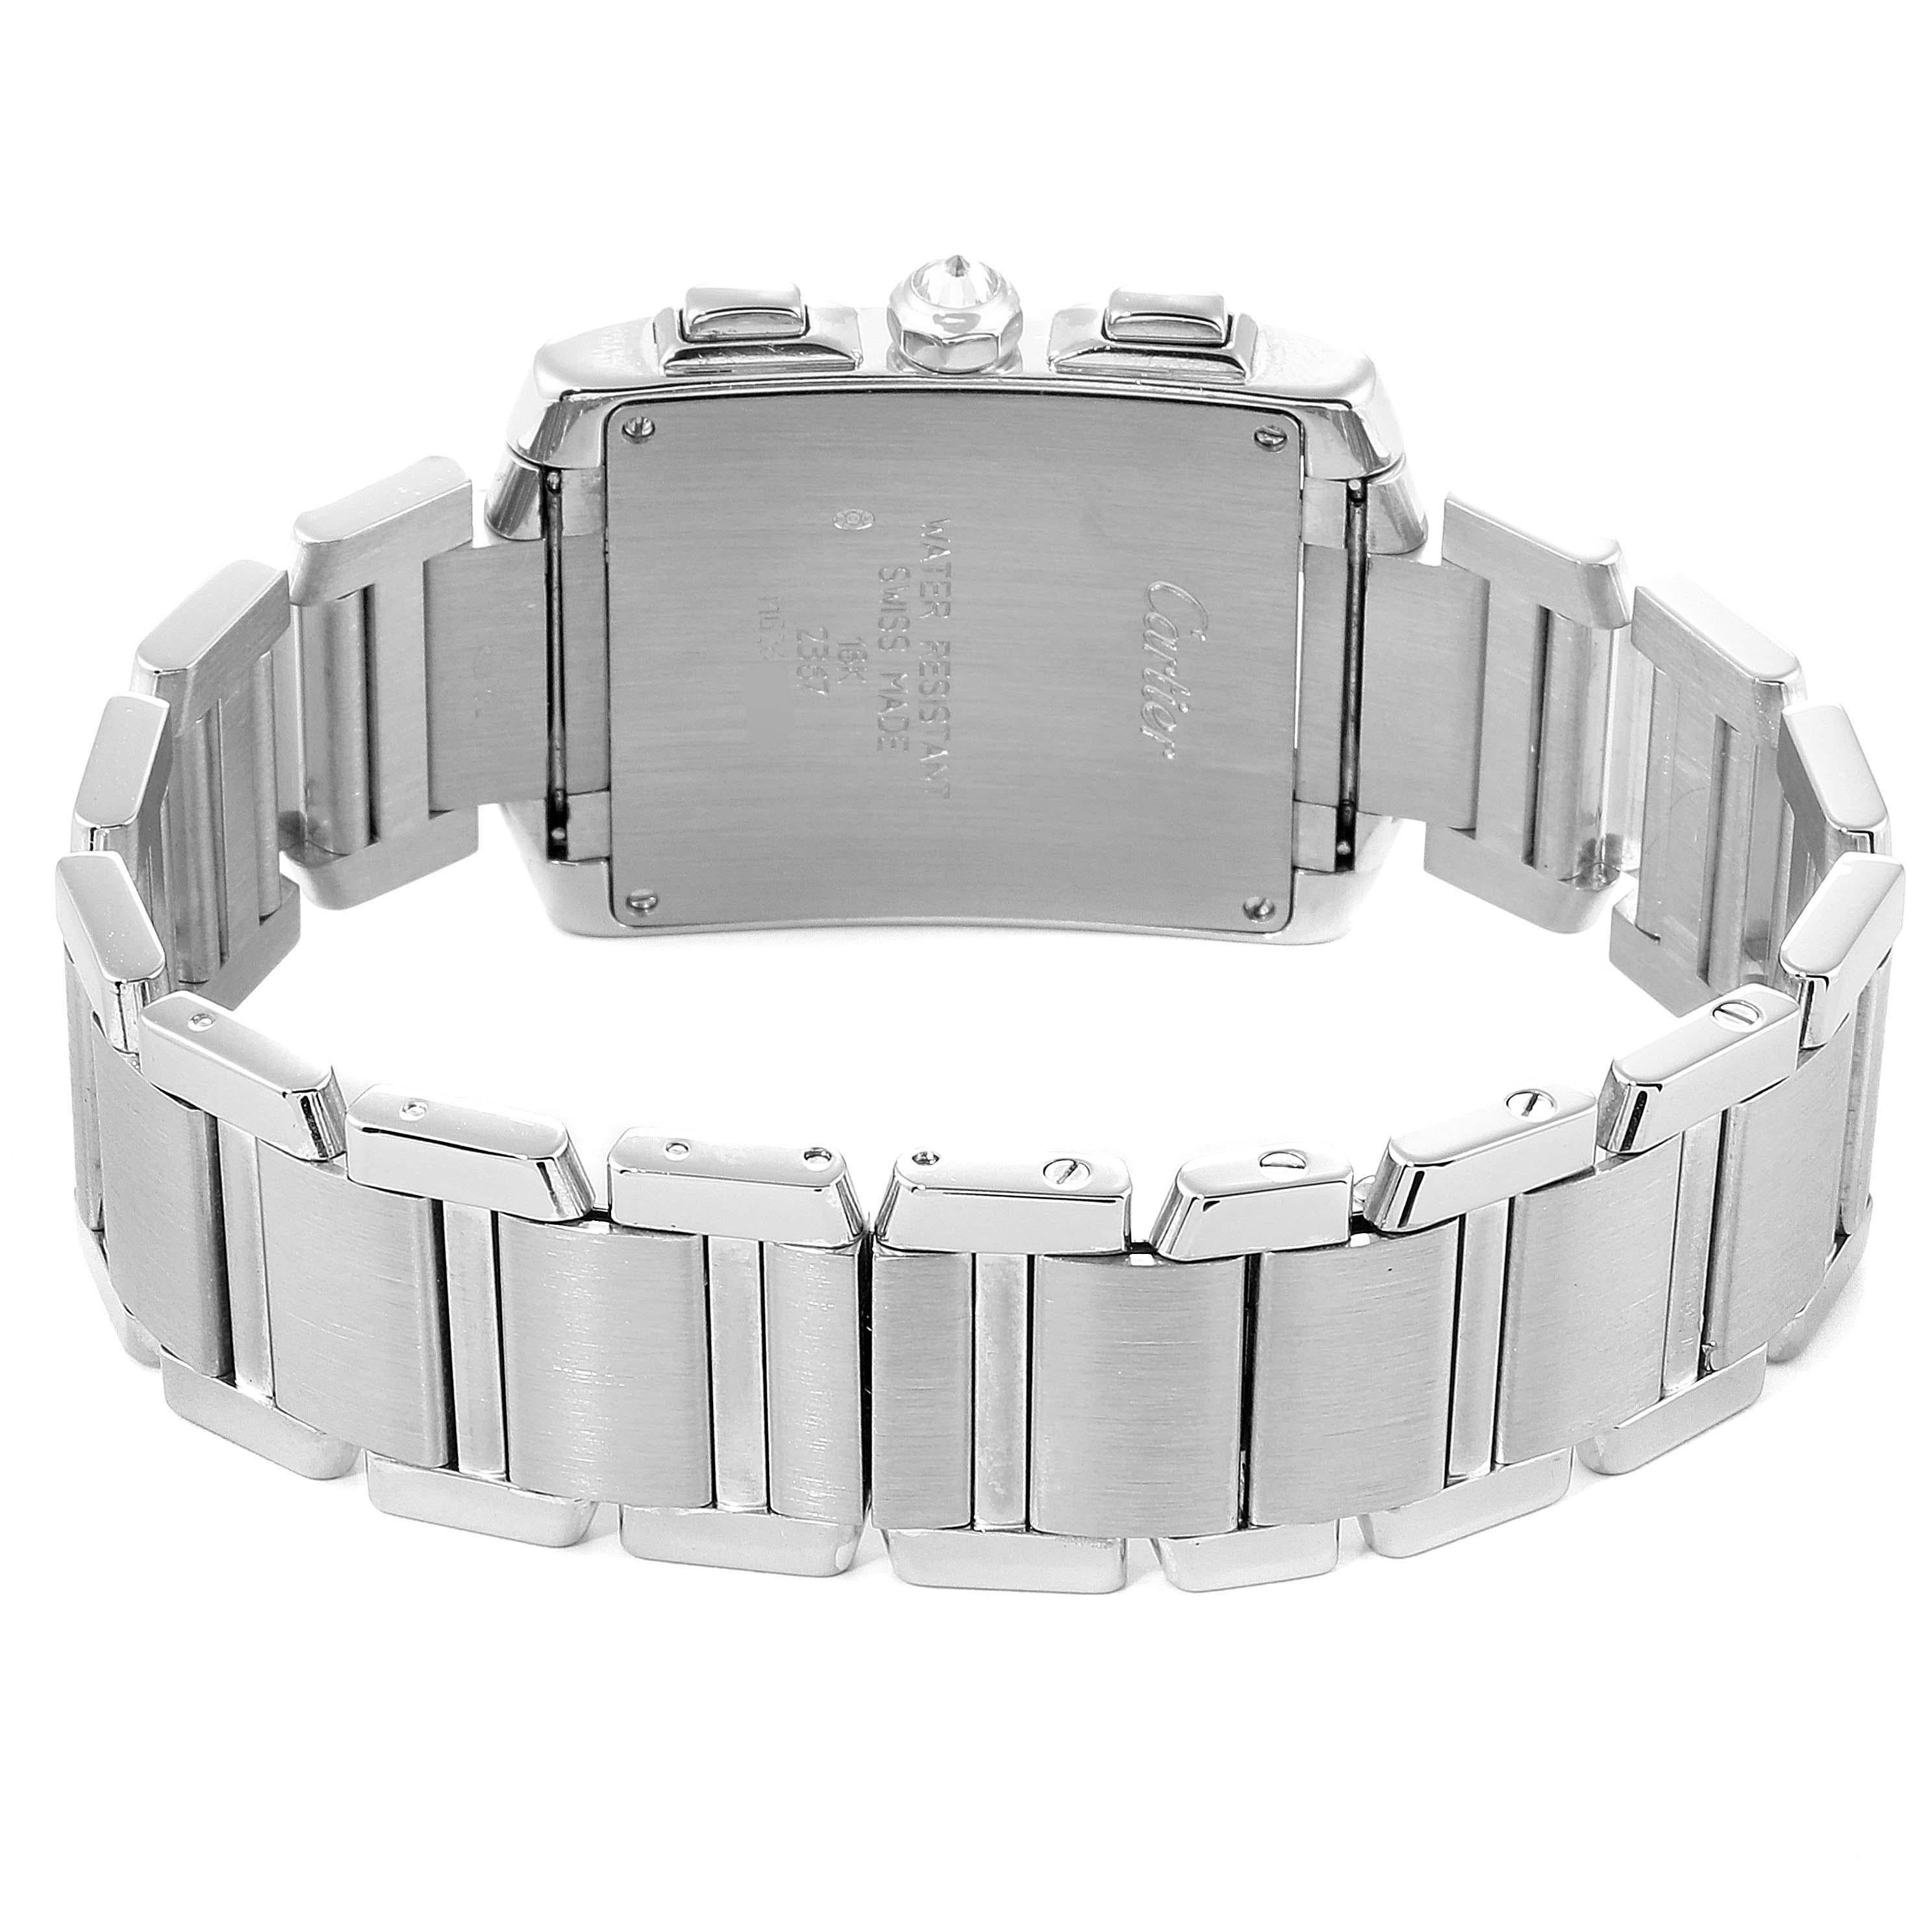 Cartier Tank Francaise Chrongraph White Gold Diamond Men's Watch 2367 2